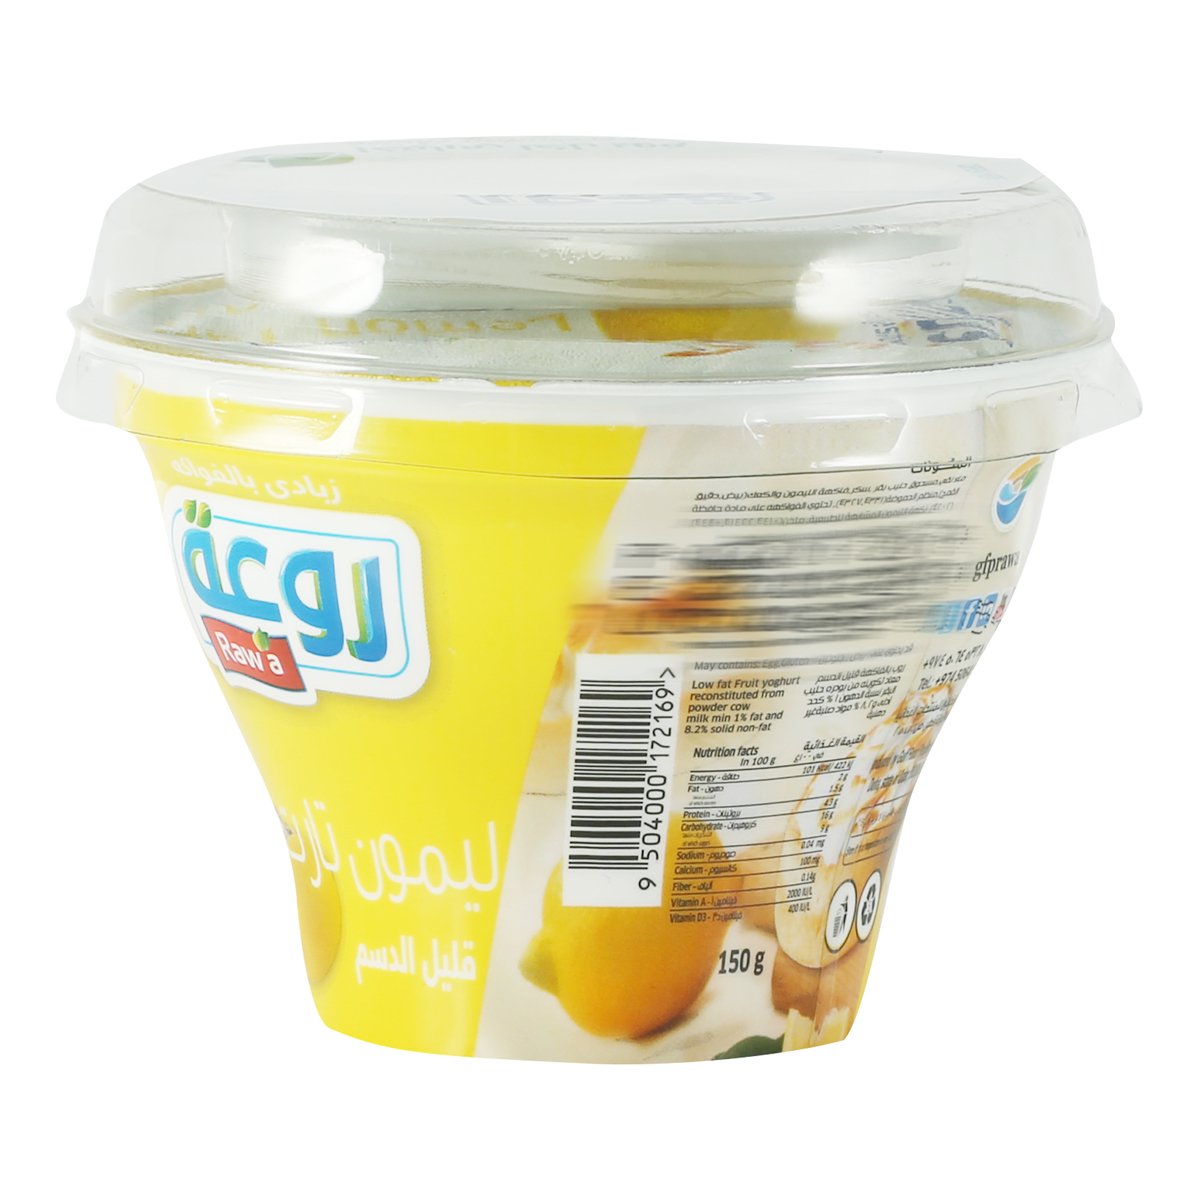 Rawa Fruit Yoghurt Lemon Tart 150g